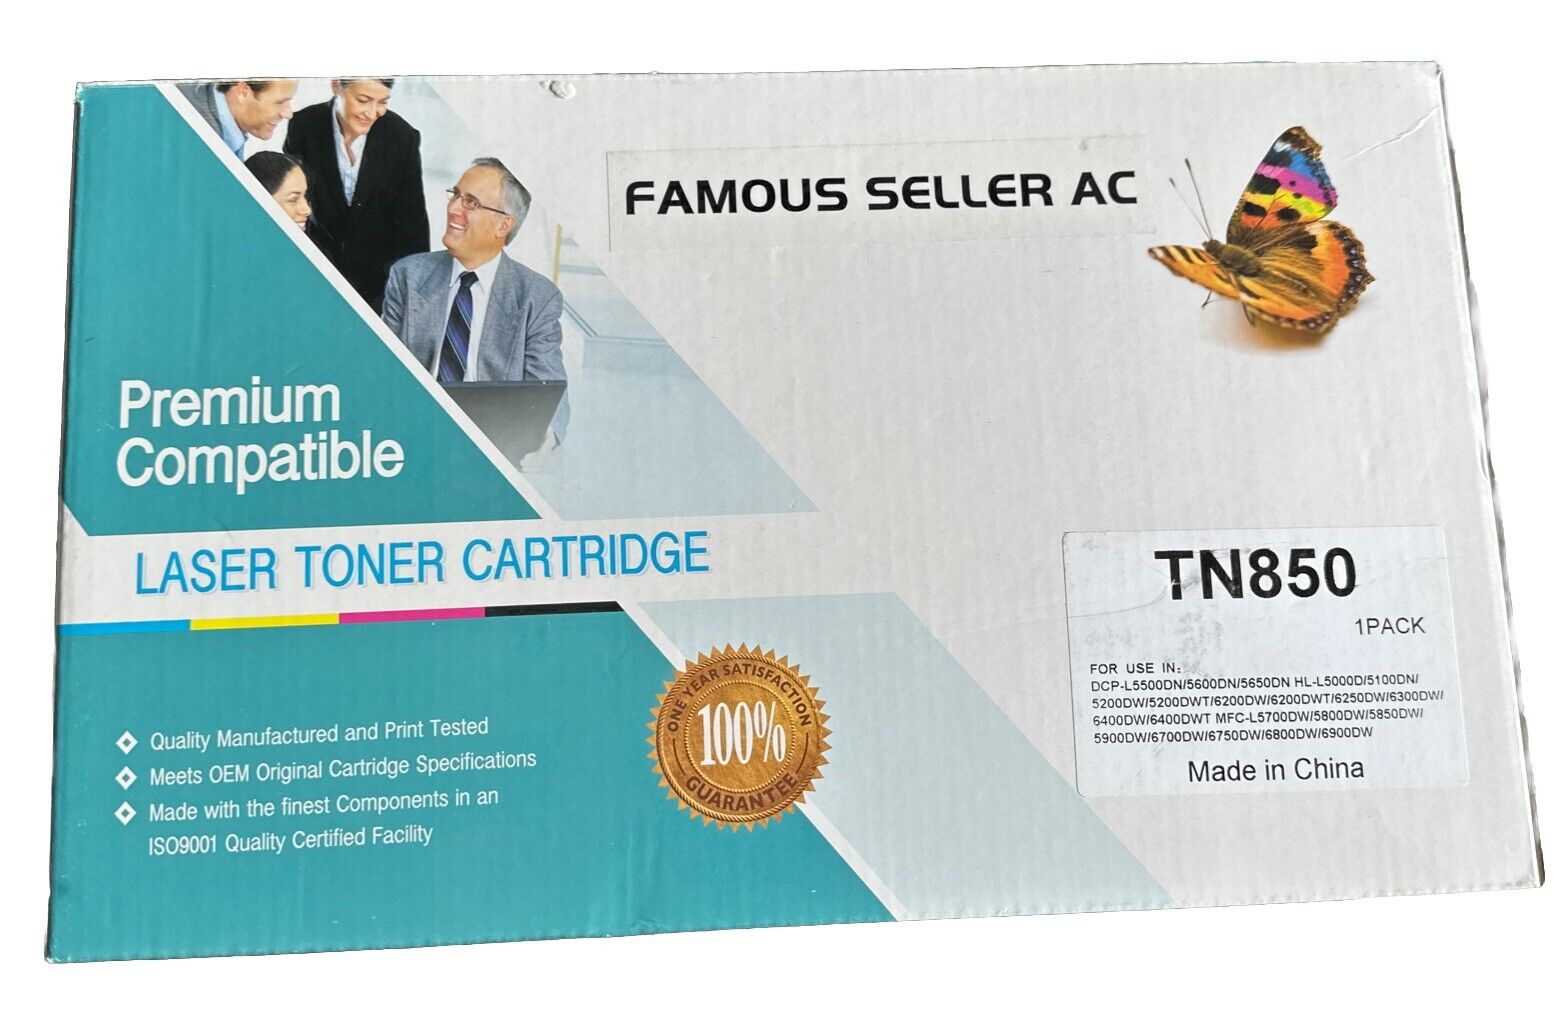 Premium Toner Cartridge TN850